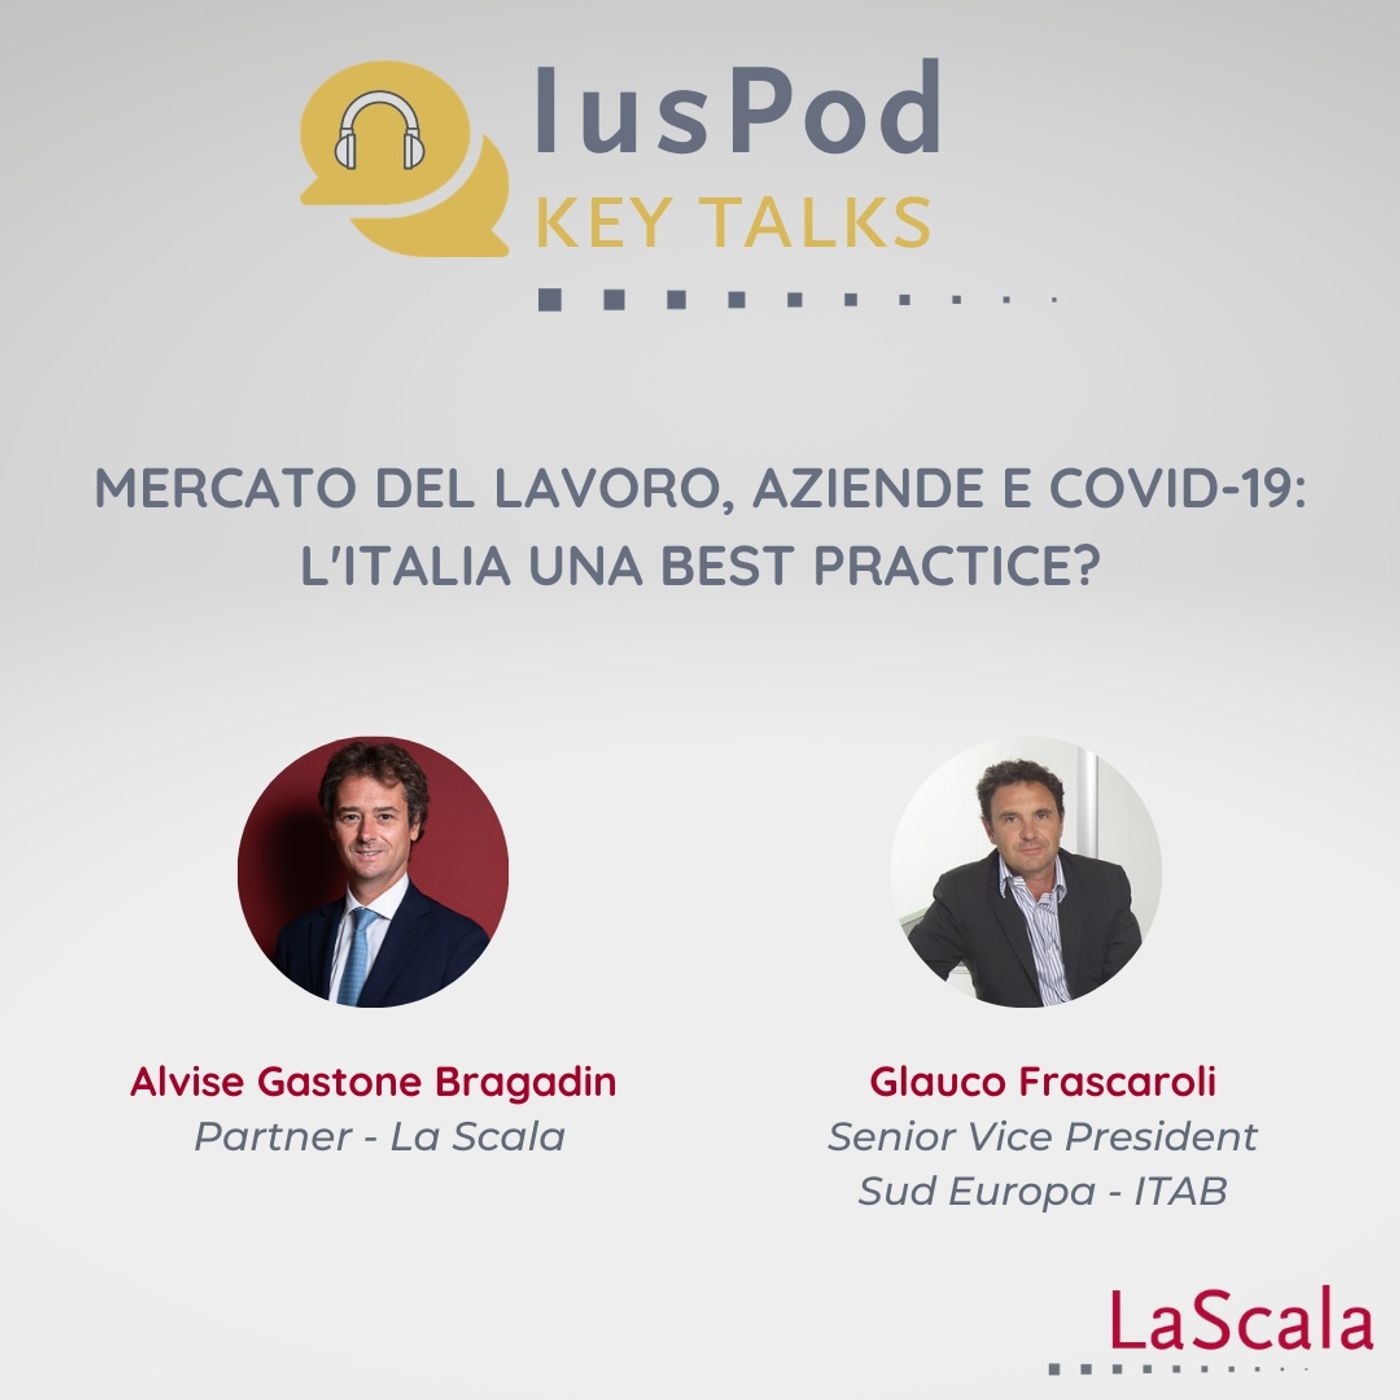 Ep. 2 IusPod Key Talks Mercato del lavoro, aziende e Covid-19: l'Italia una best practice?